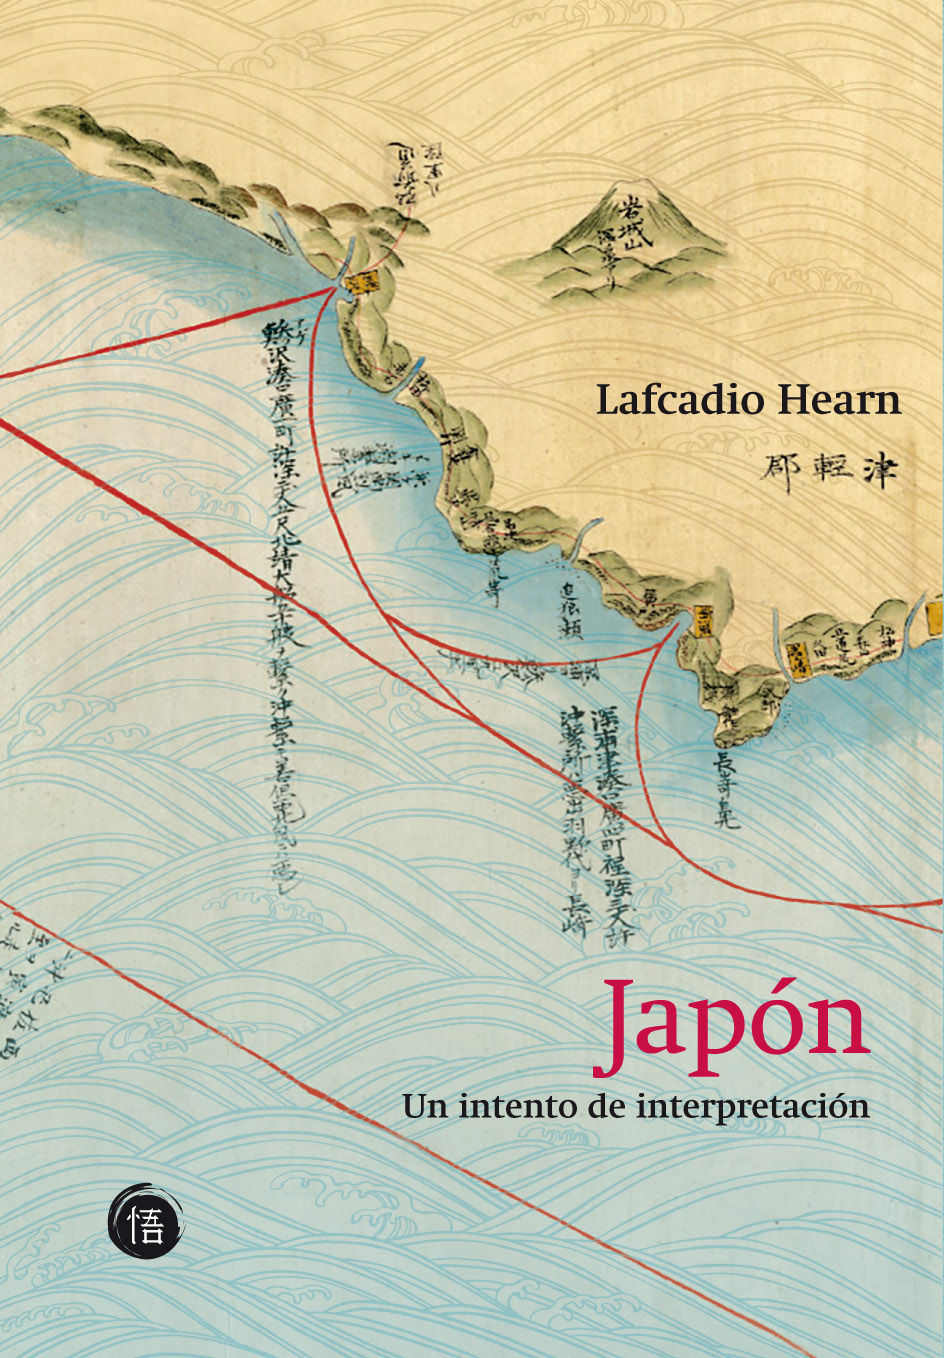 Lafcadio Hearn: Japón: Un intento de reinterpretación (Español language, 2009, Satori)